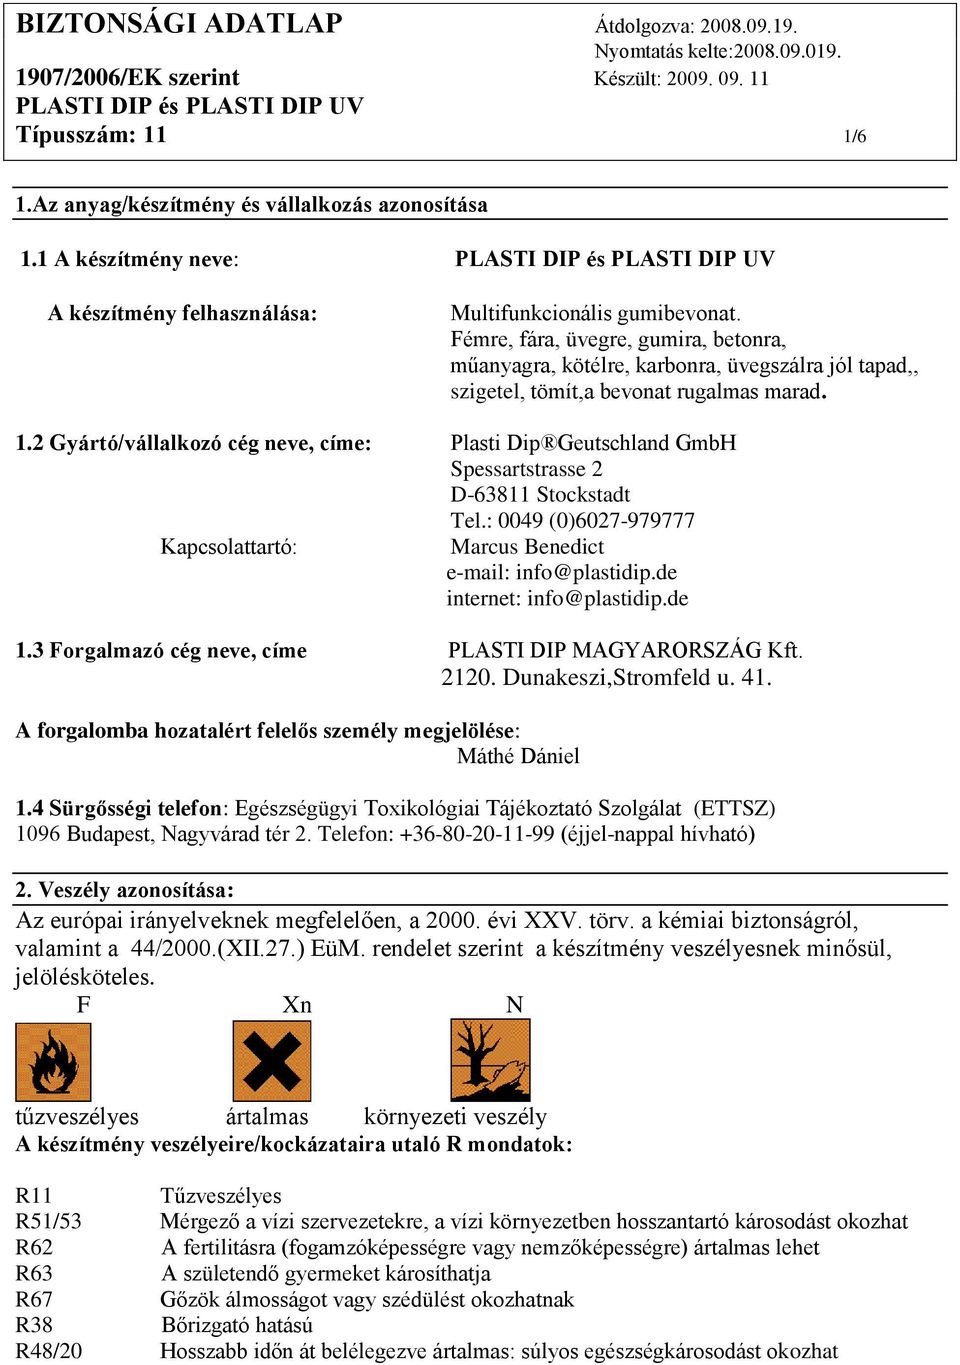 2 Gyártó/vállalkozó cég neve, címe: Plasti Dip Geutschland GmbH Spessartstrasse 2 D-63811 Stockstadt Tel.: 0049 (0)6027-979777 Kapcsolattartó: Marcus Benedict e-mail: info@plastidip.